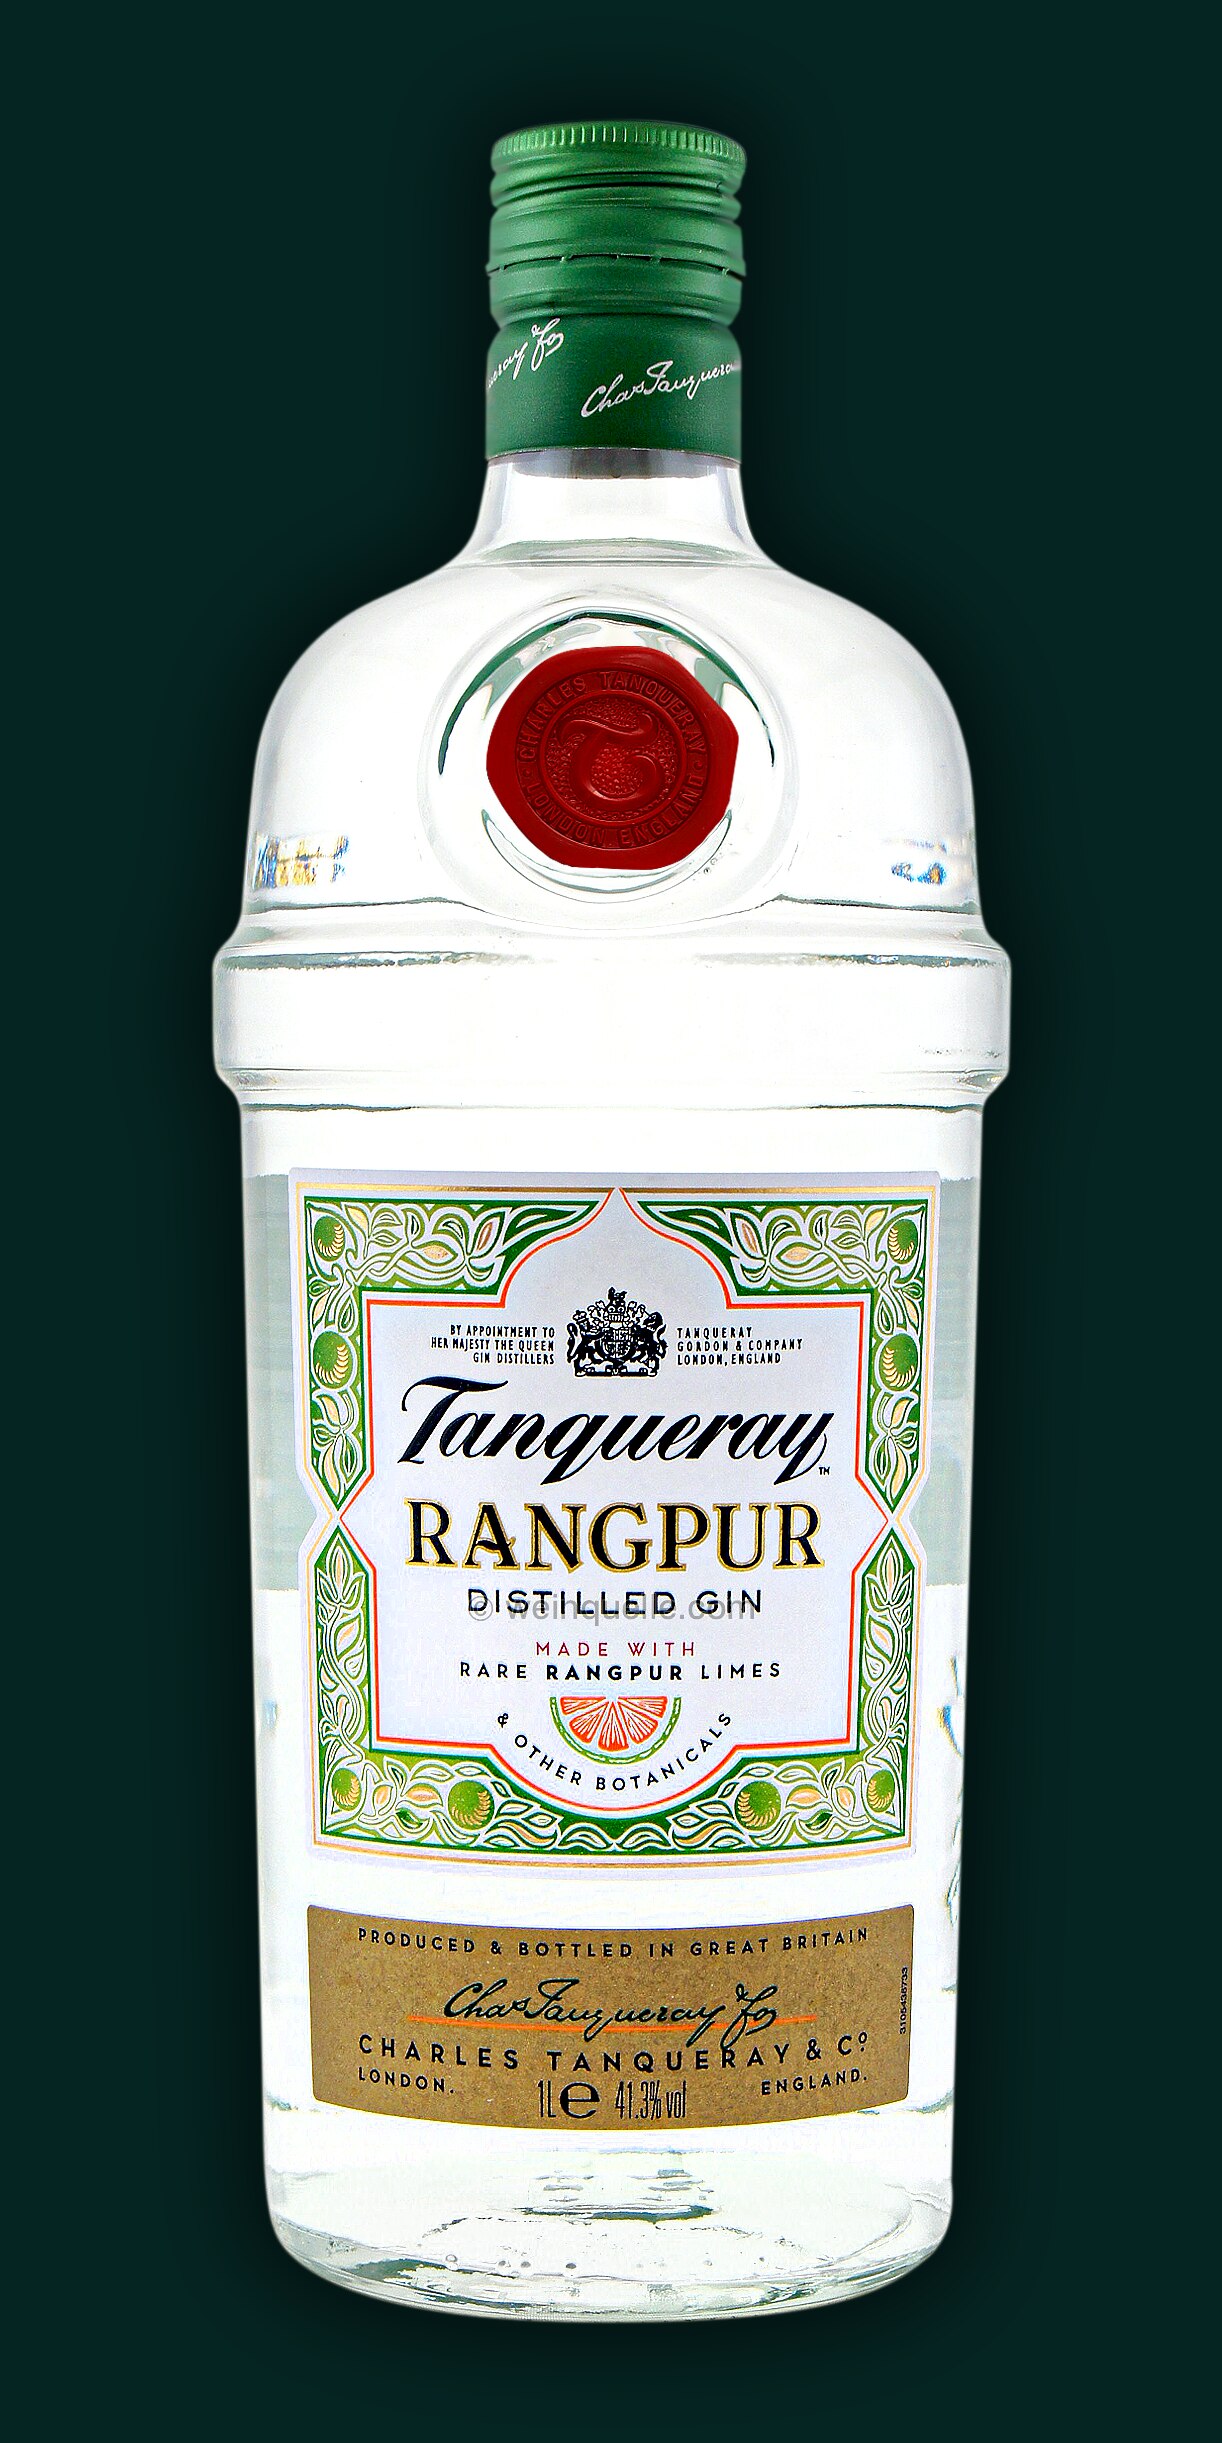 Weinquelle 27,95 € - Liter, 1,0 Lime Tanqueray Rangpur Lühmann 41,3%